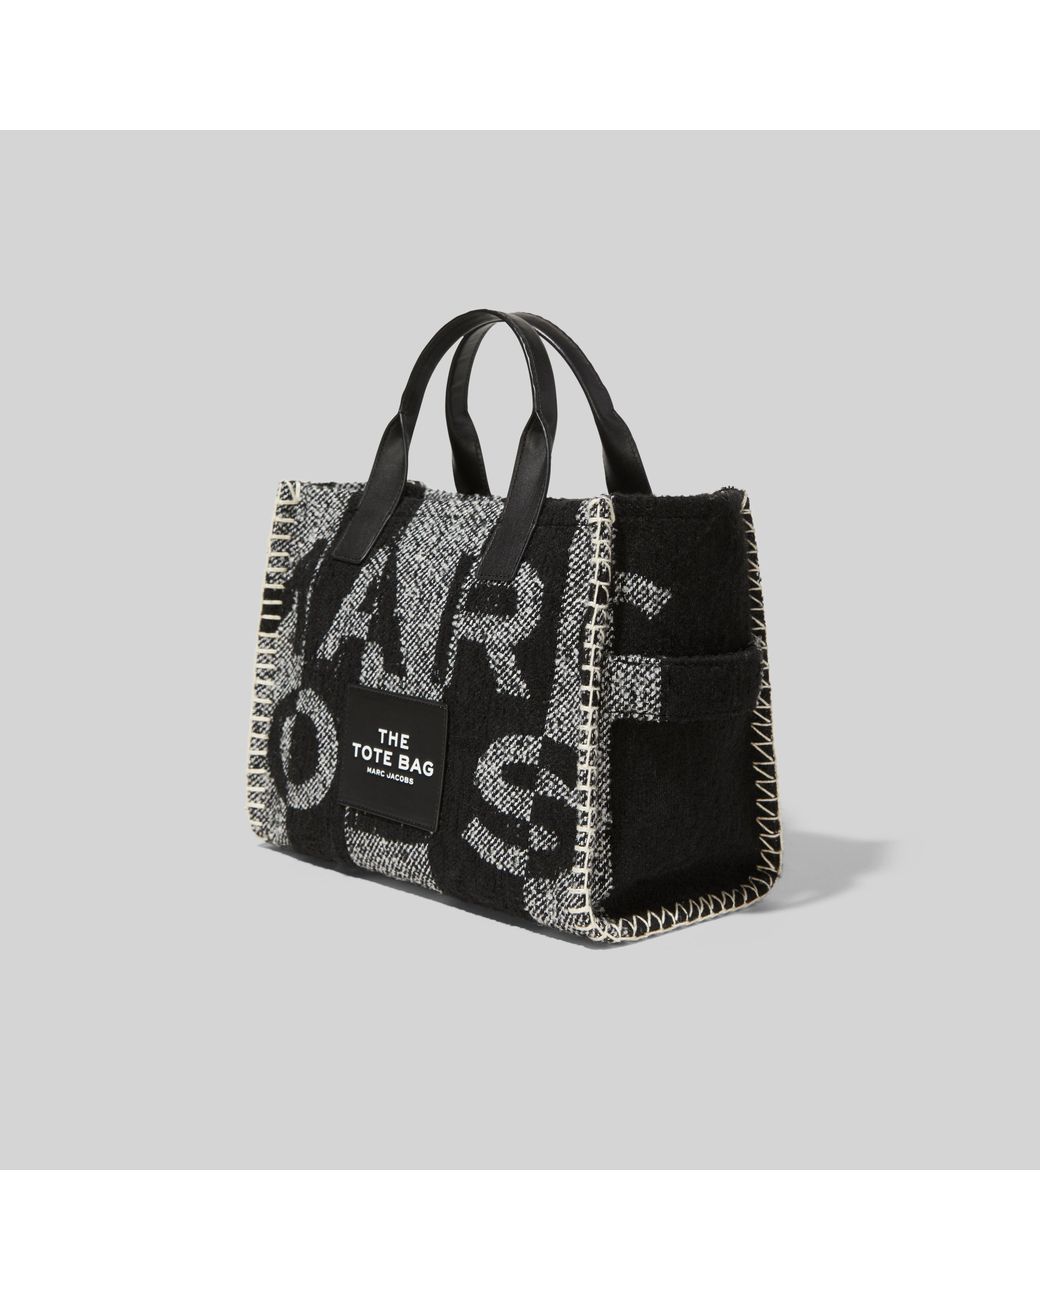 Marc Jacobs Medium The Blanket Tote Bag in Black